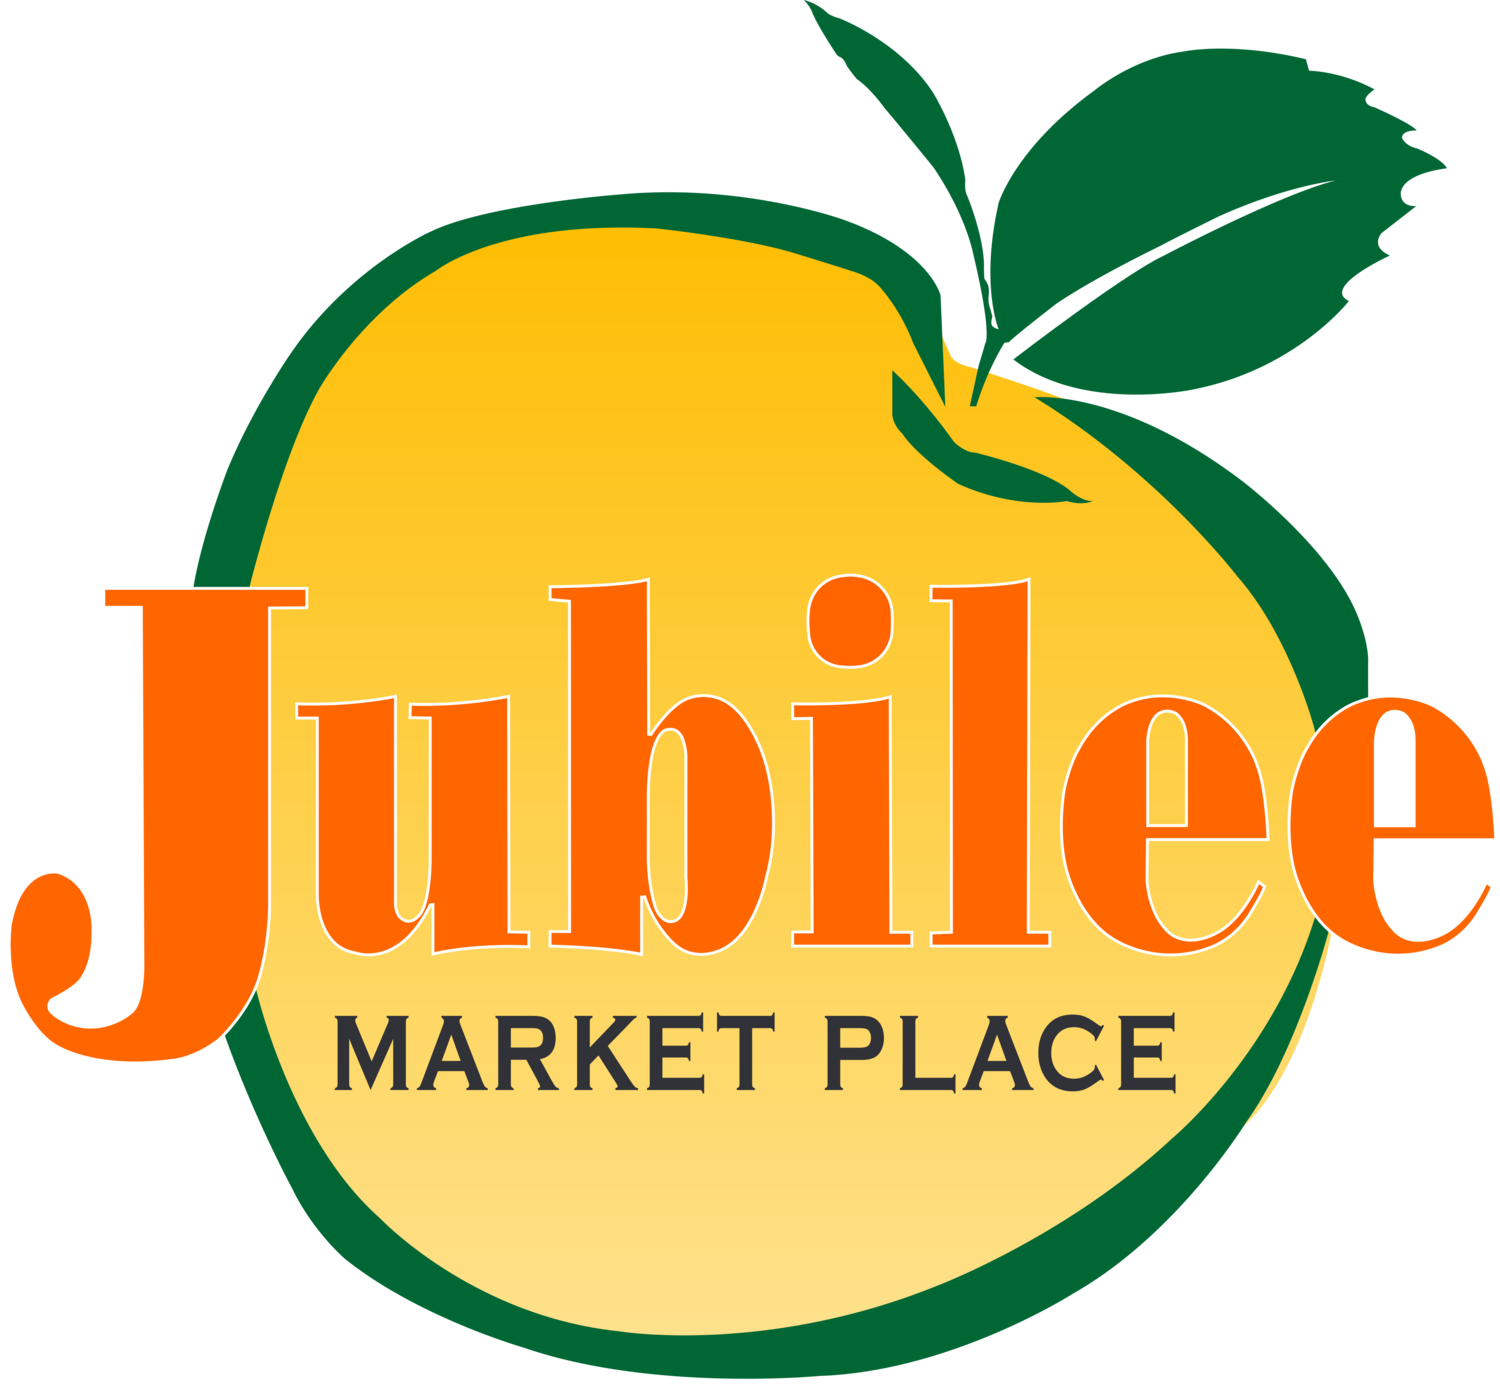 Jubilee Market Place